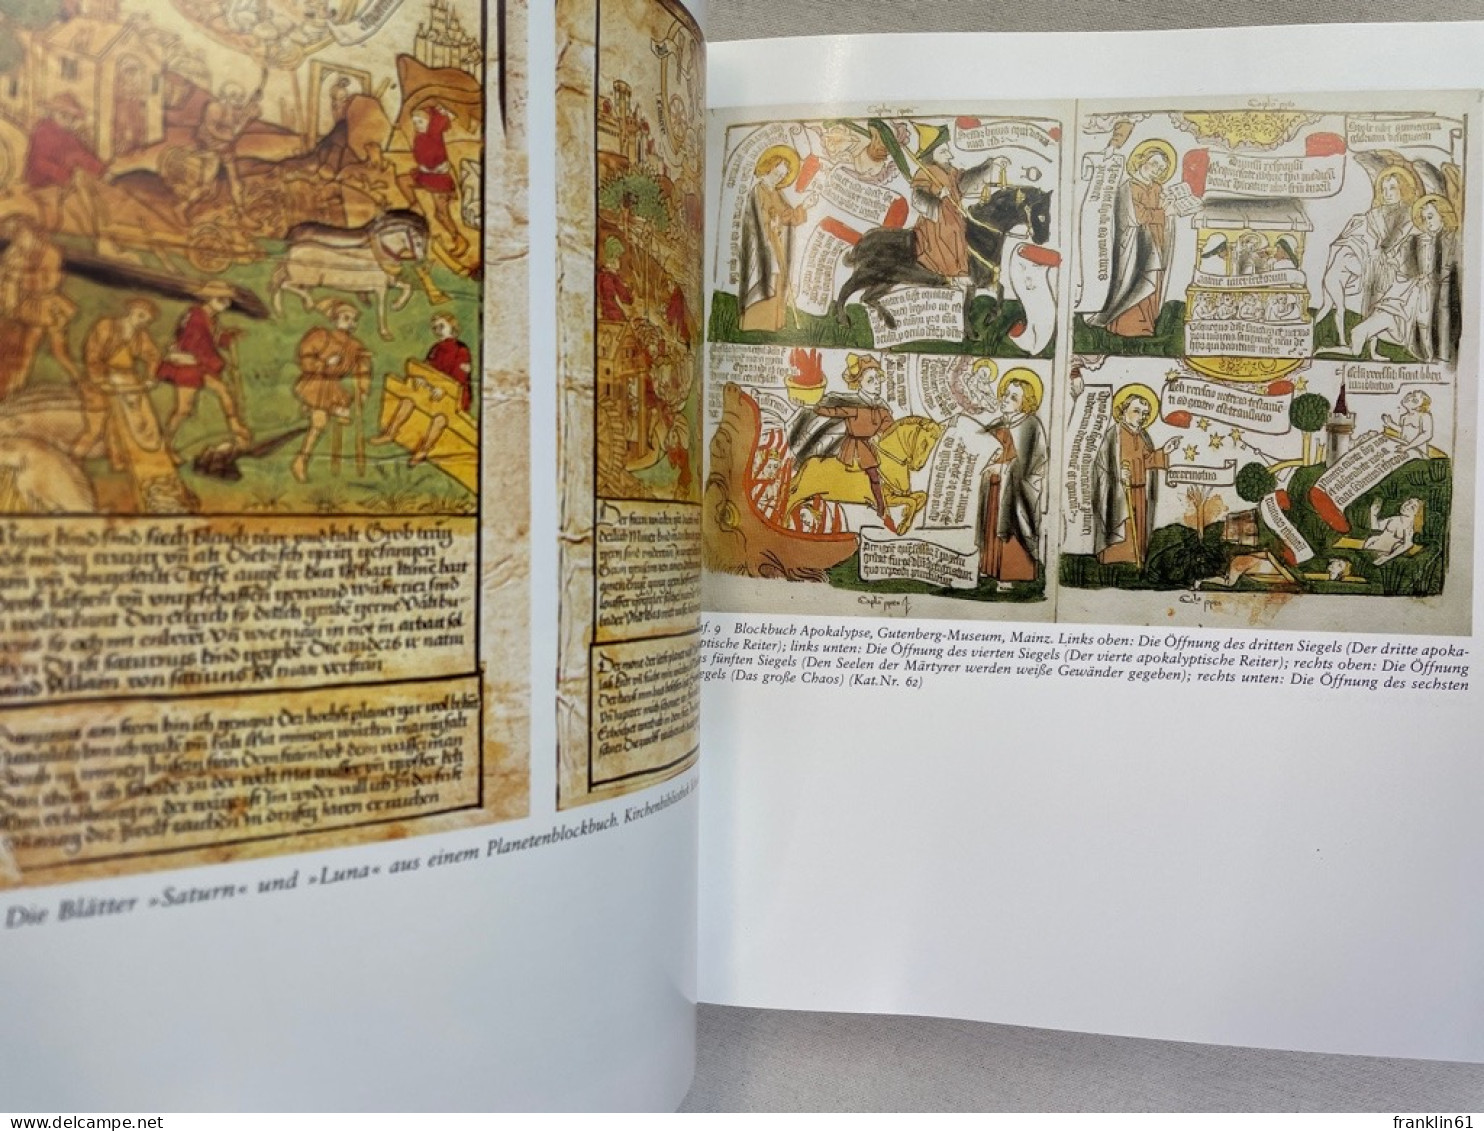 Blockbücher des Mittelalters : Bilderfolgen als Lektüre ; Gutenberg-Museum, Mainz, 22. Juni 1991 bis 1. Sept